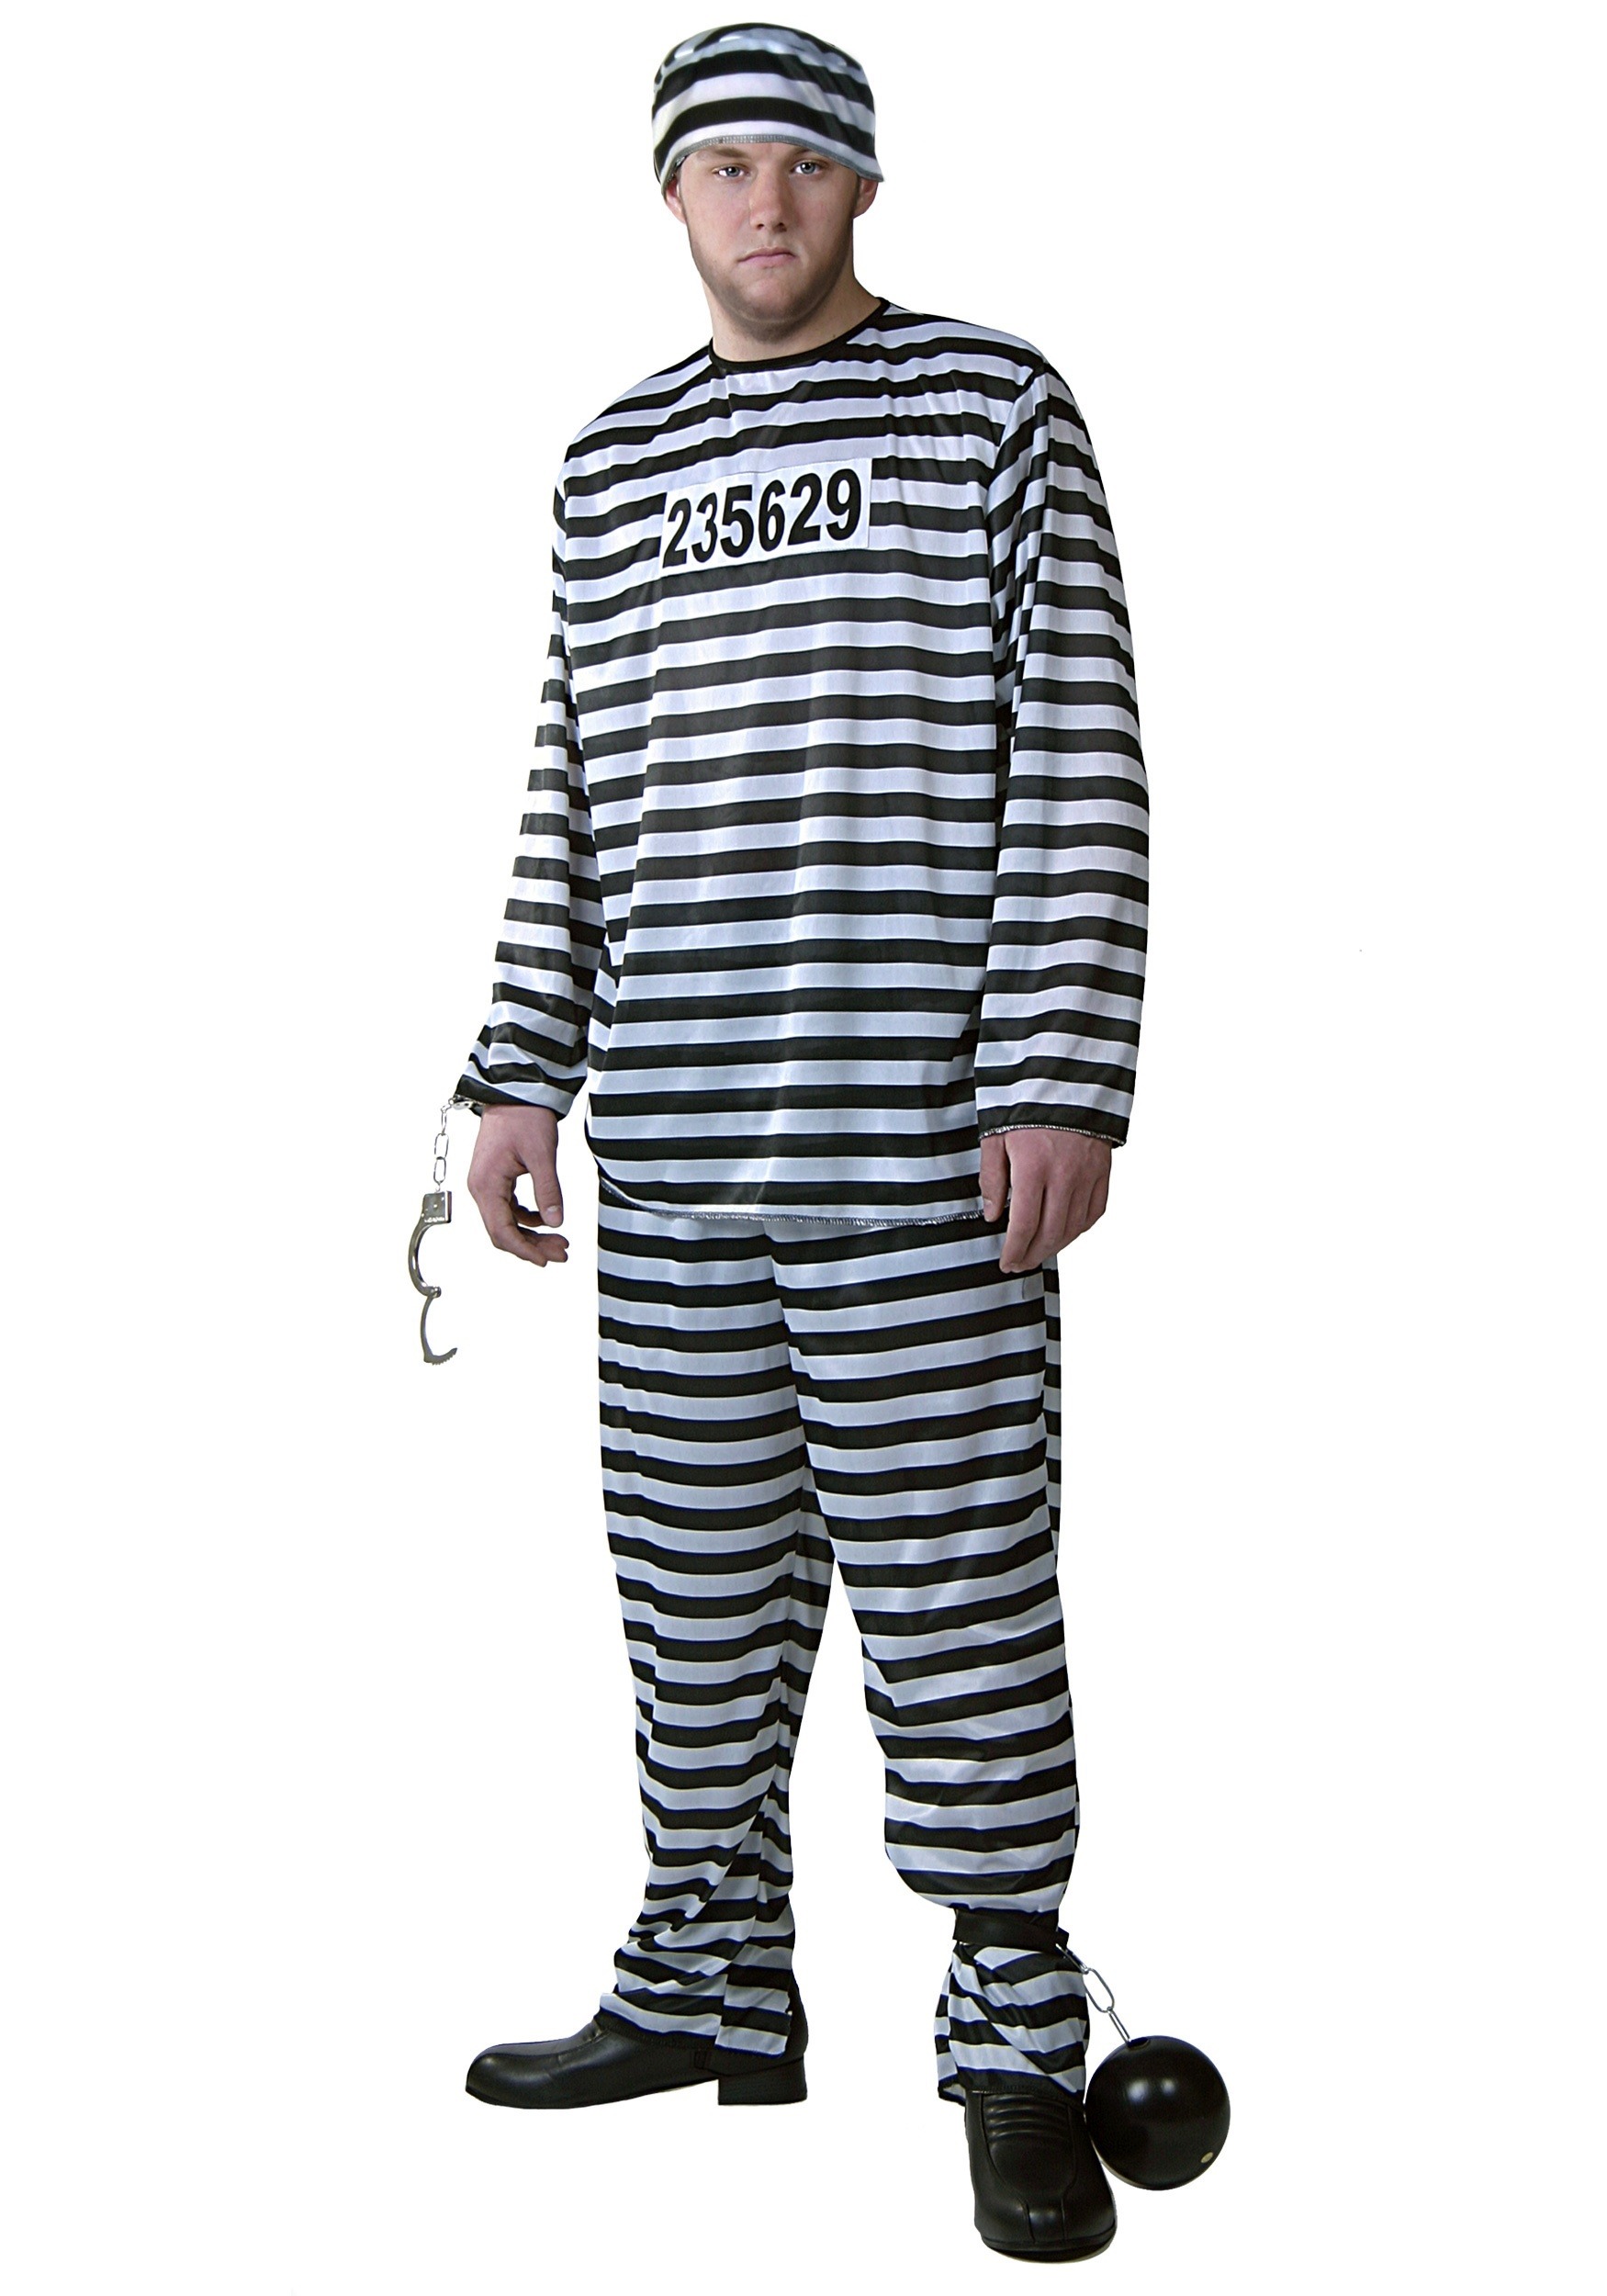 Mens Prisoner Costume | eBay